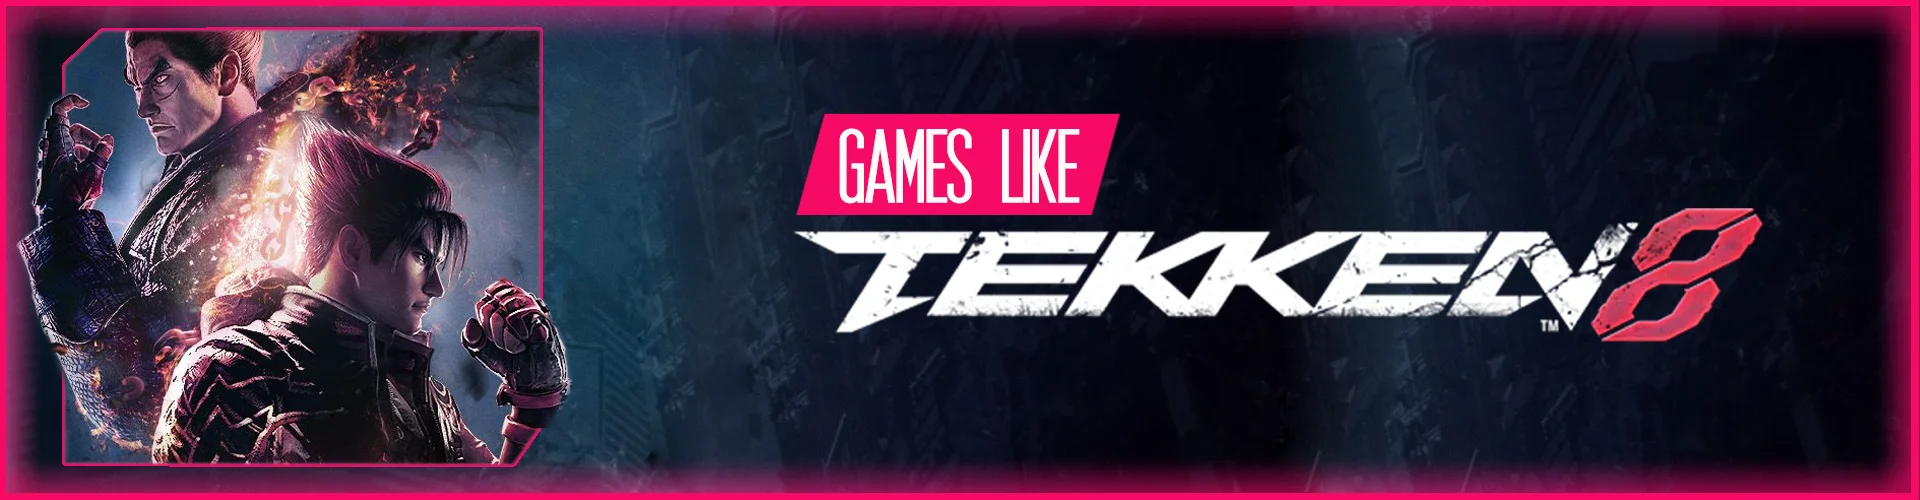 Spiele Wie Tekken 8